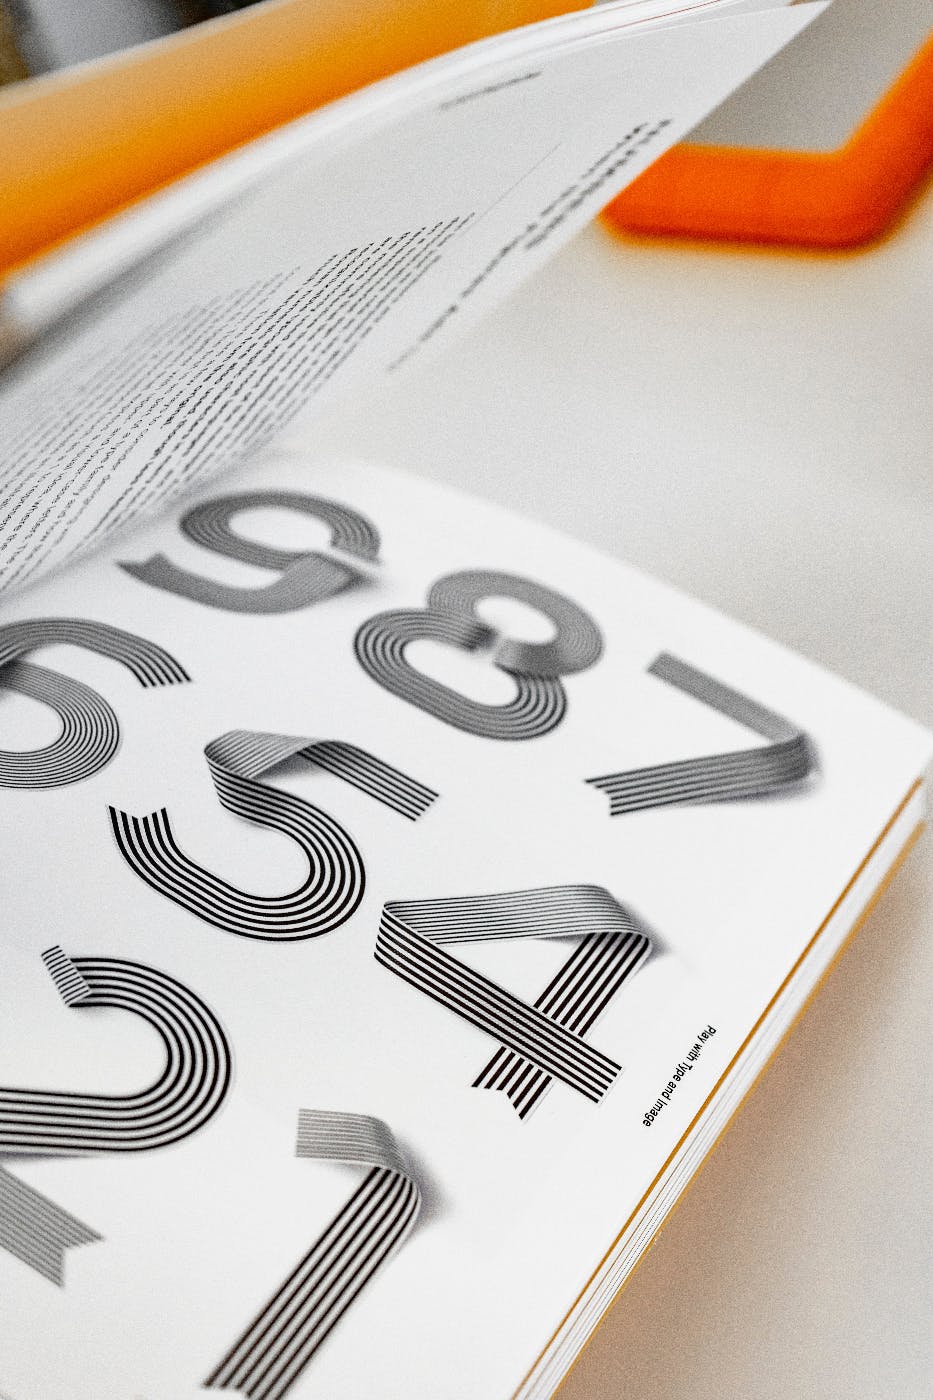 creative number designs in a book